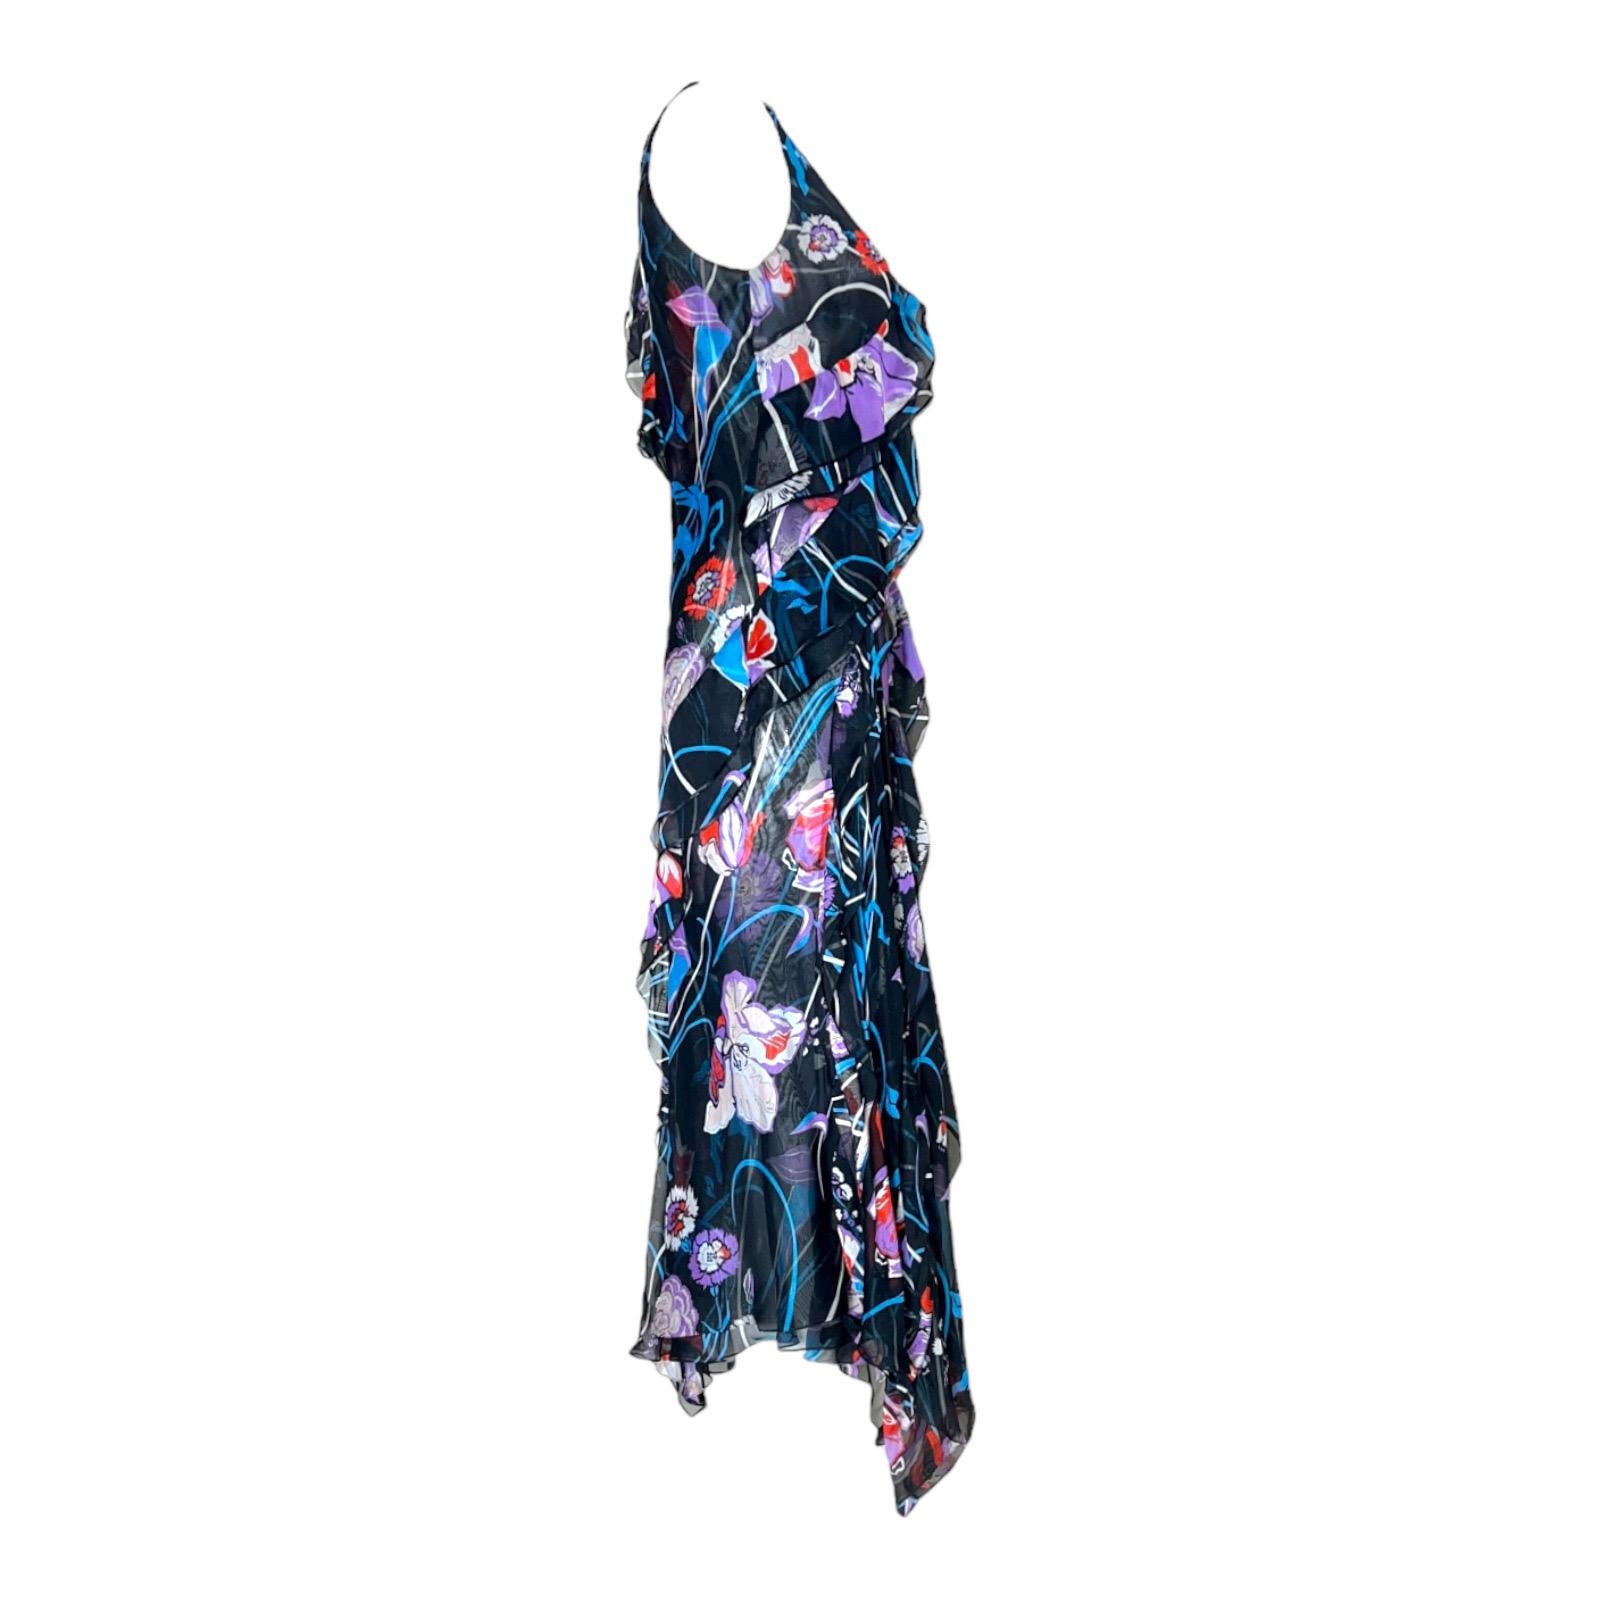 Beautiful Emilio Pucci Silk Dress
In the signature floral print
